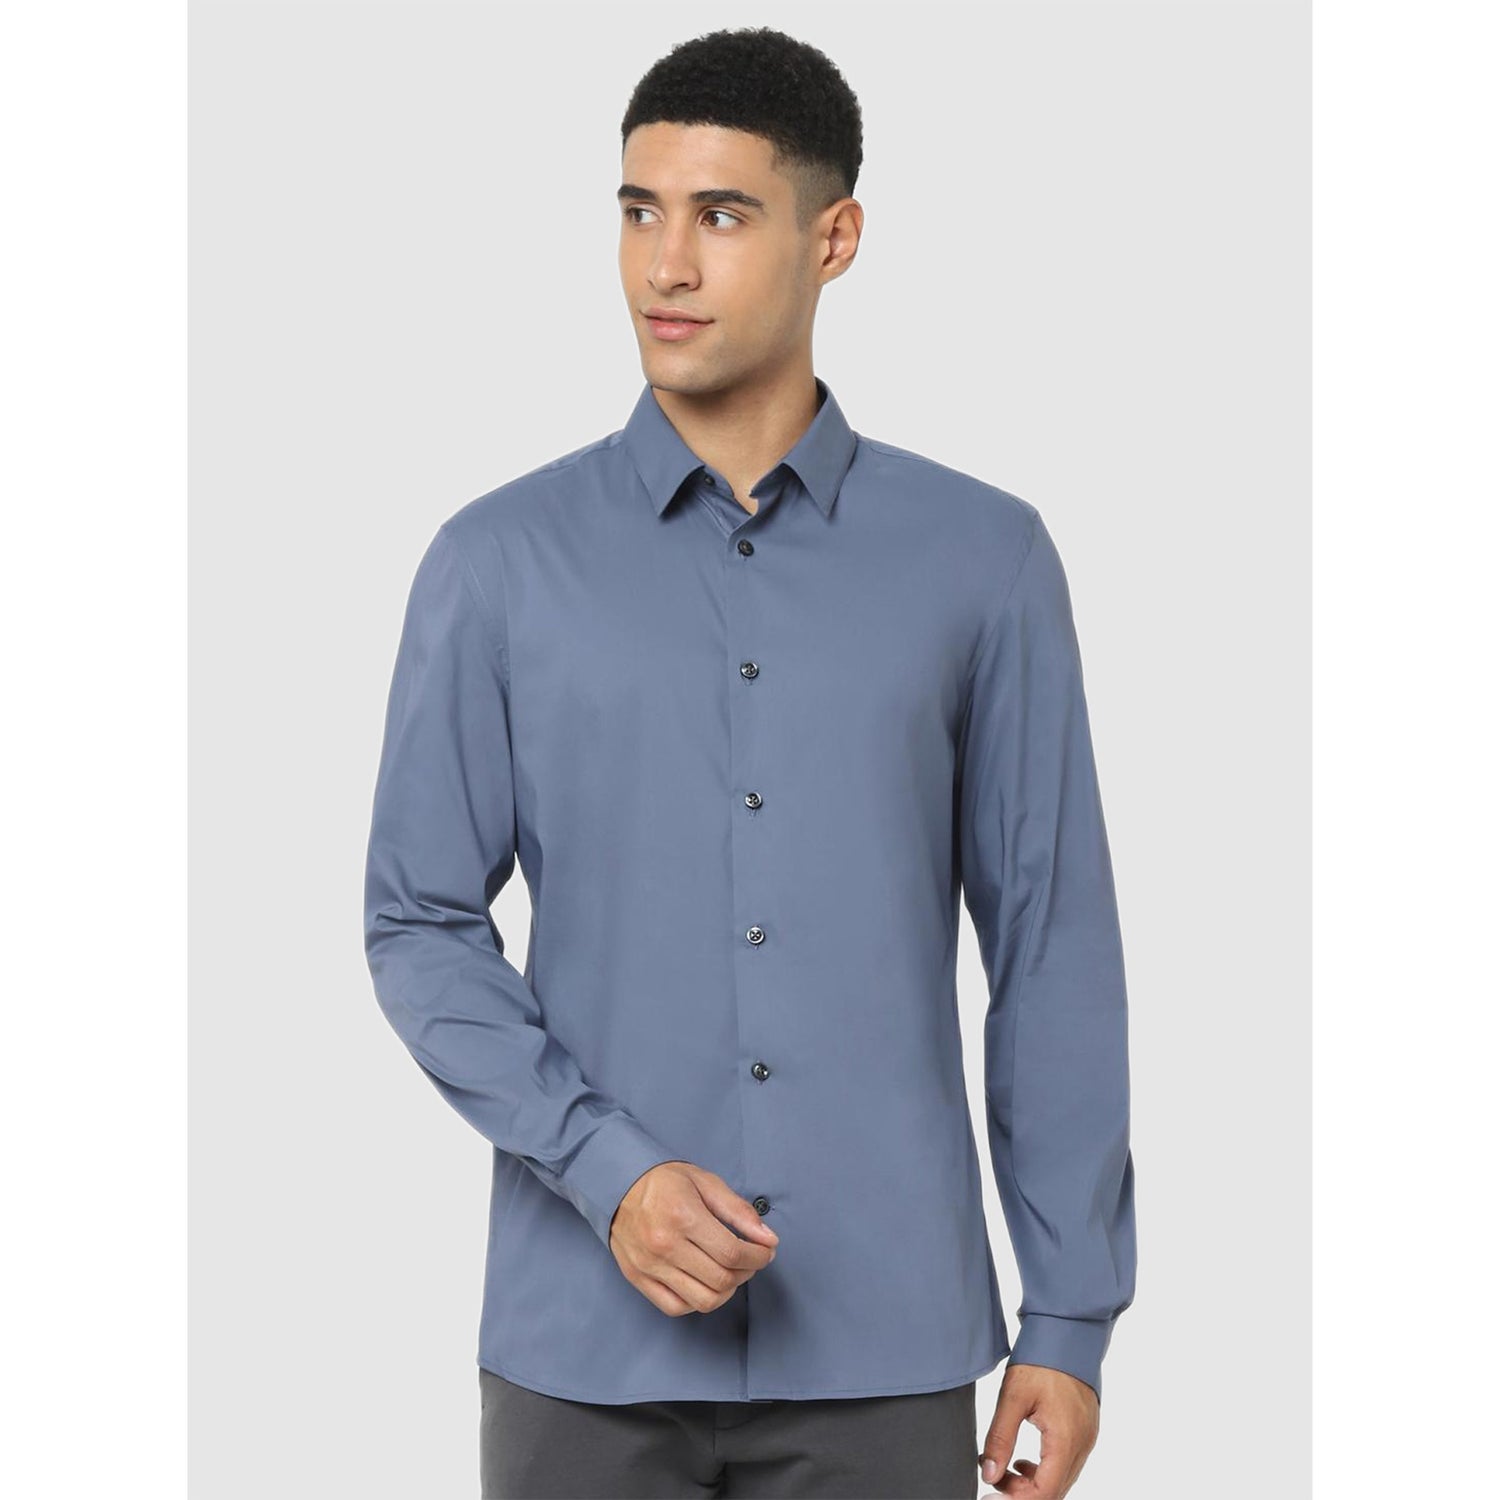 Blue Classic Casual Long Sleeve Collar Regular Fit Shirt (MASANTAL)